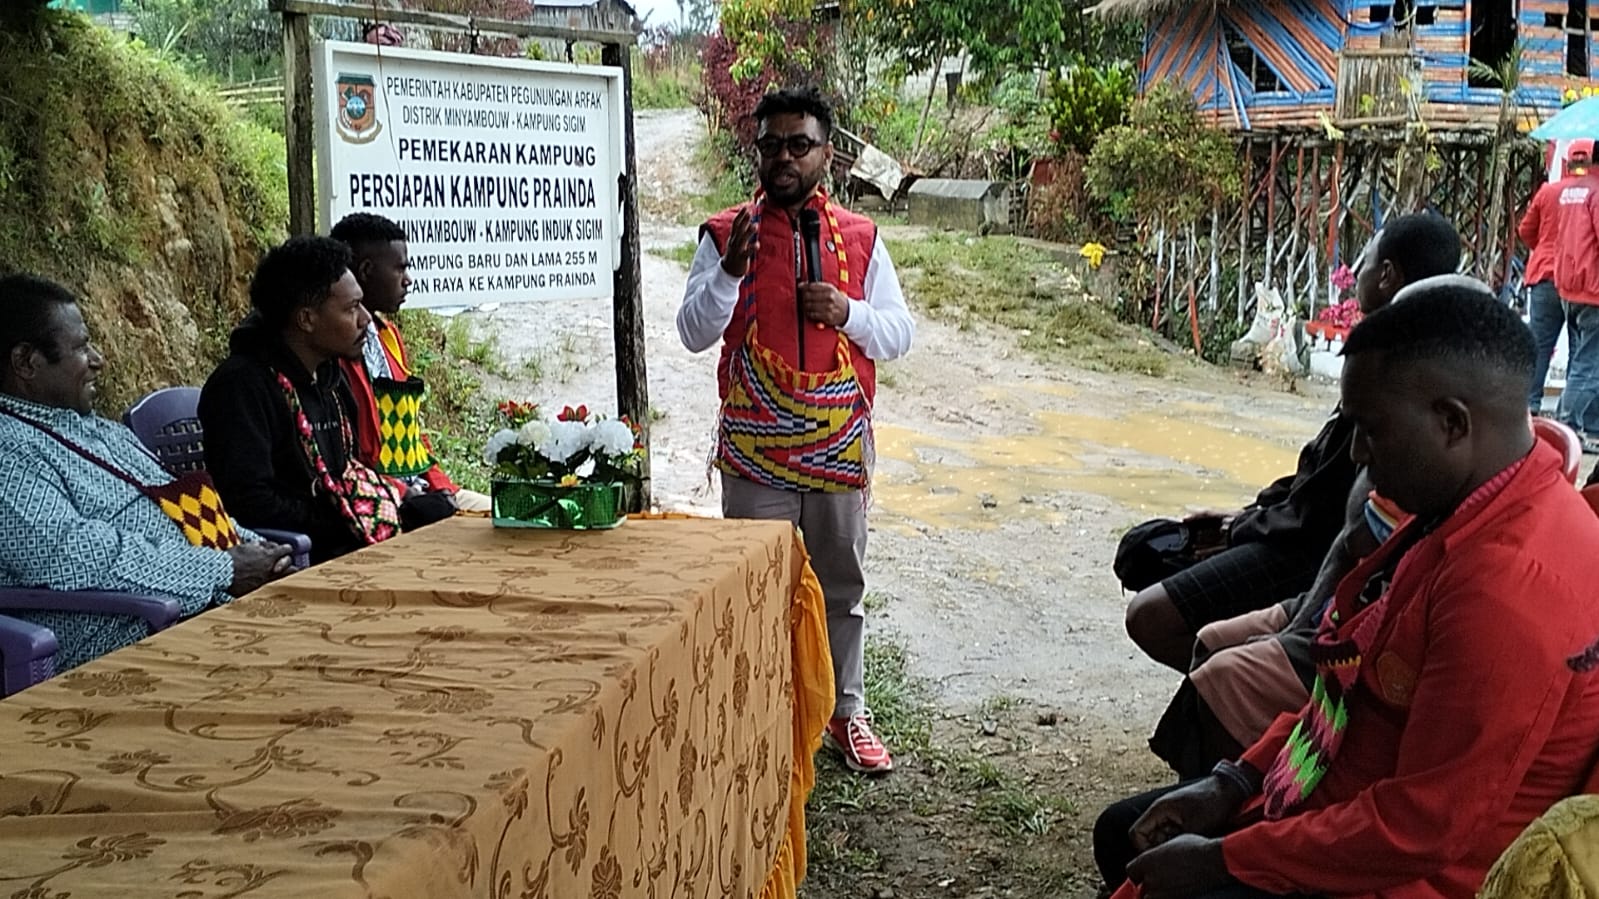 Kunjungan Filep Wamafma ke Minyambouw, Papua (Sinpo.id/Tim Media)